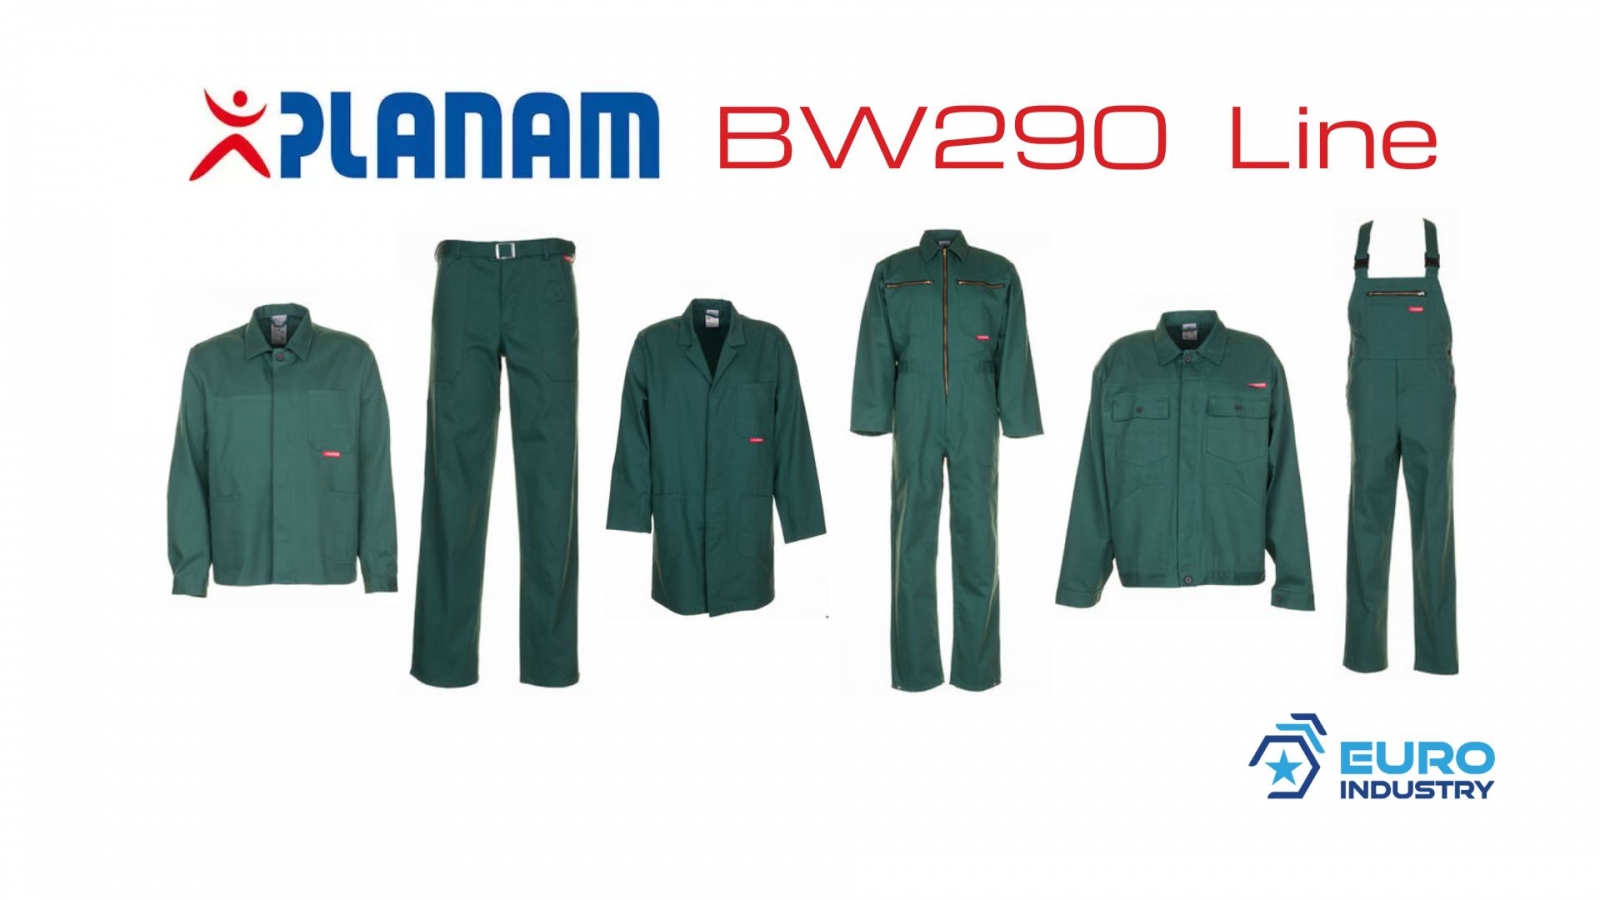 pics/Planam/0134/planam-bw-290-linie-mittelgruen-baumwolle-details.jpg